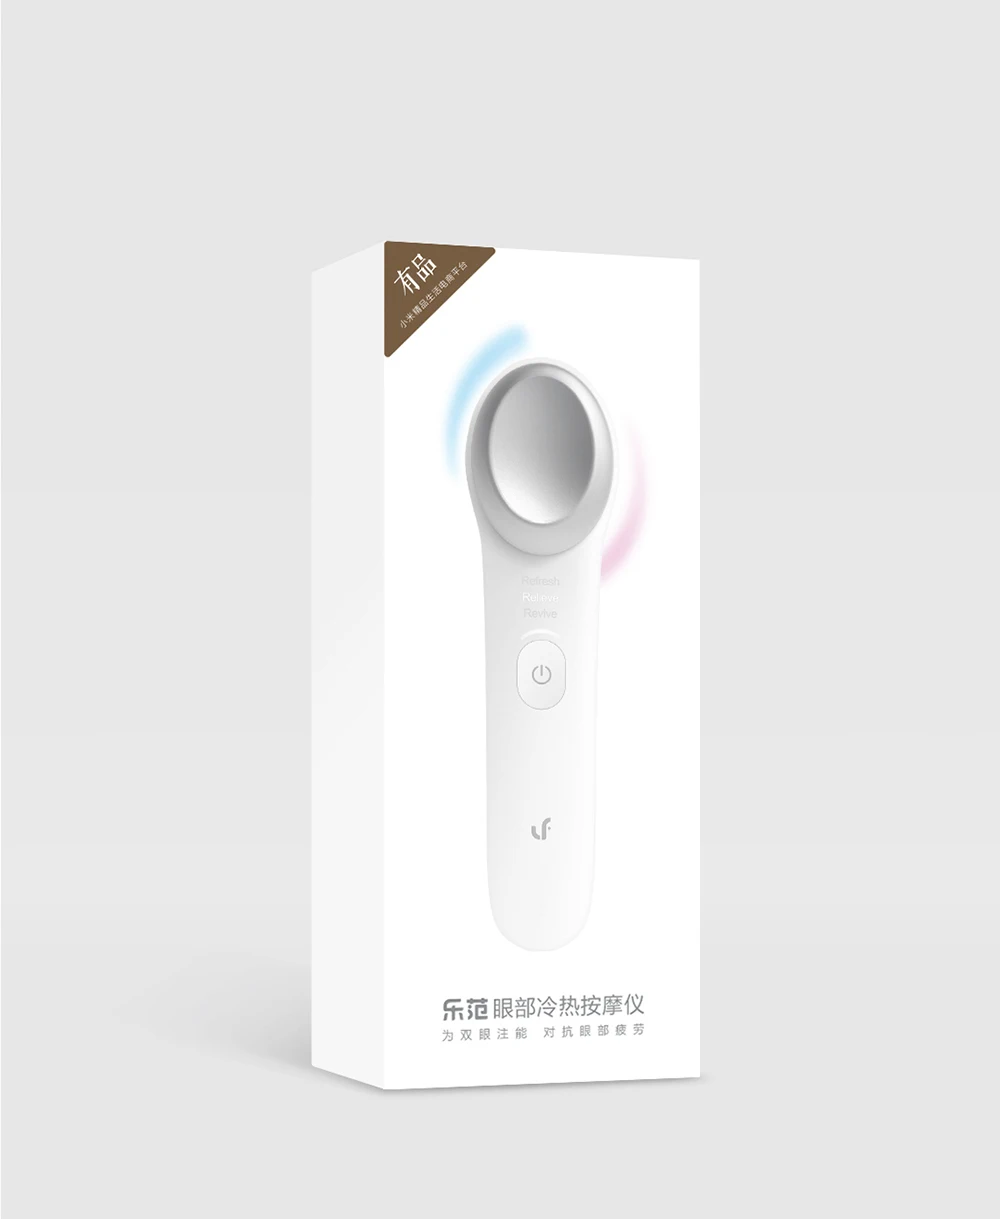 Xiaomi Mijia LF холодный теплый массажер для глаз автоматический умный датчик температуры контроль автоматический датчик USB порт глаза расслабляет жизнь